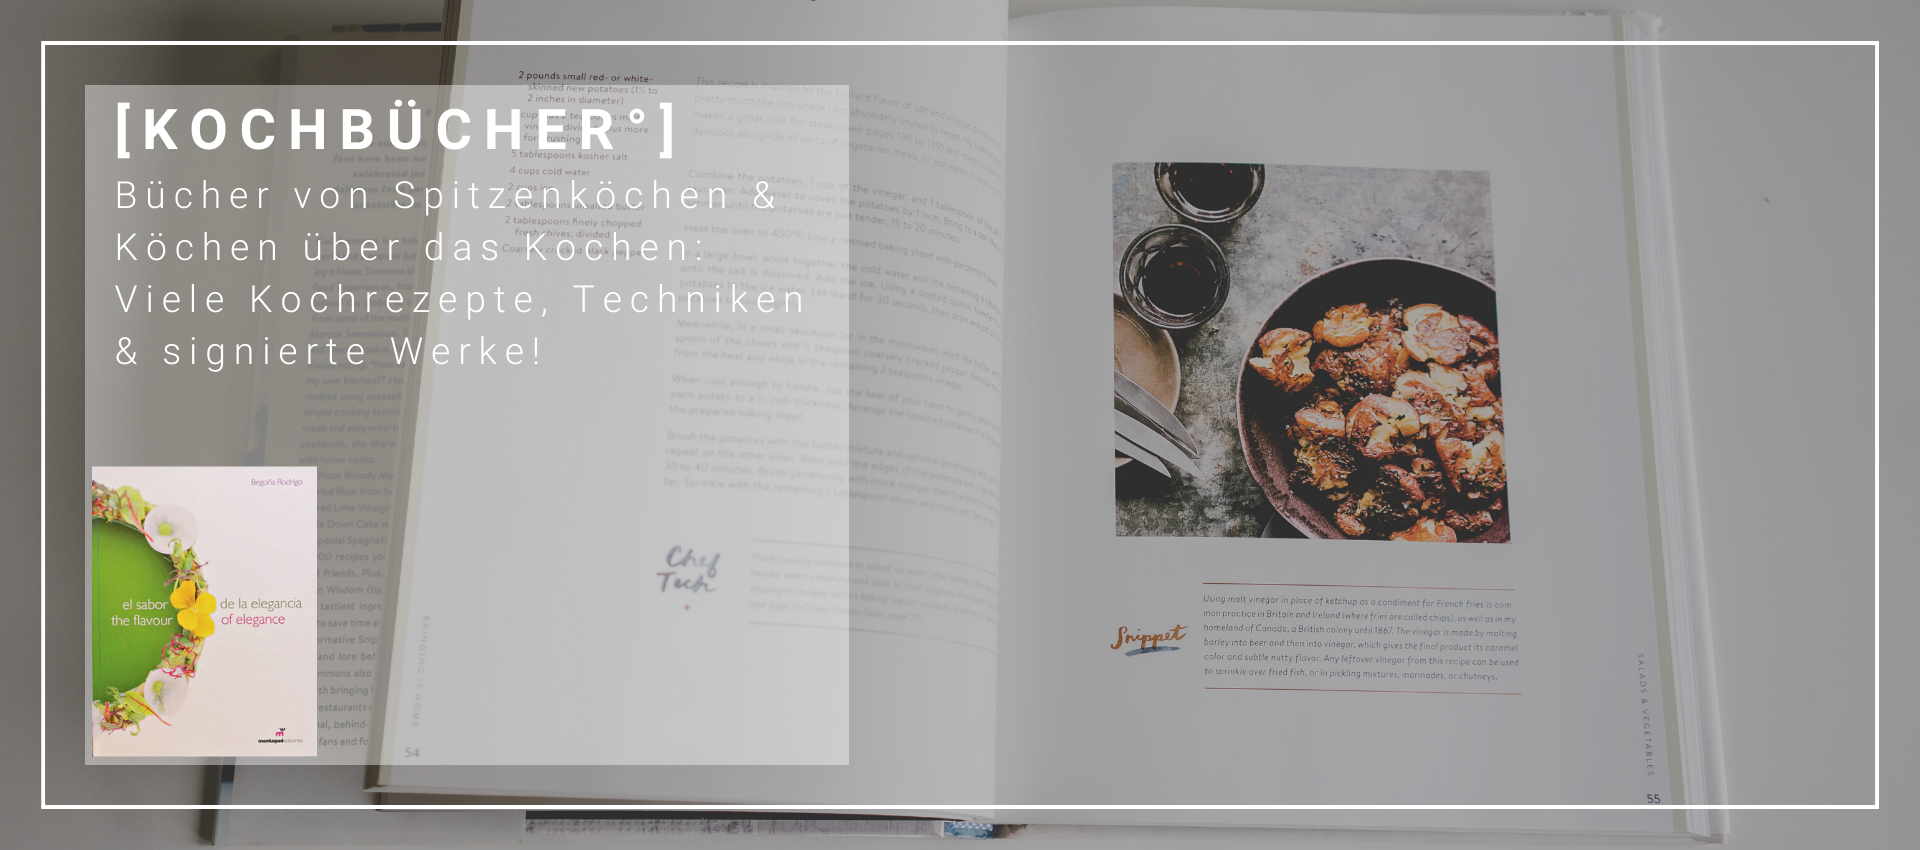 Kochbücher - Bücher und Rezepte aus aller Welt für deine Küche zur Inspiration von Spitzenköchen signiert